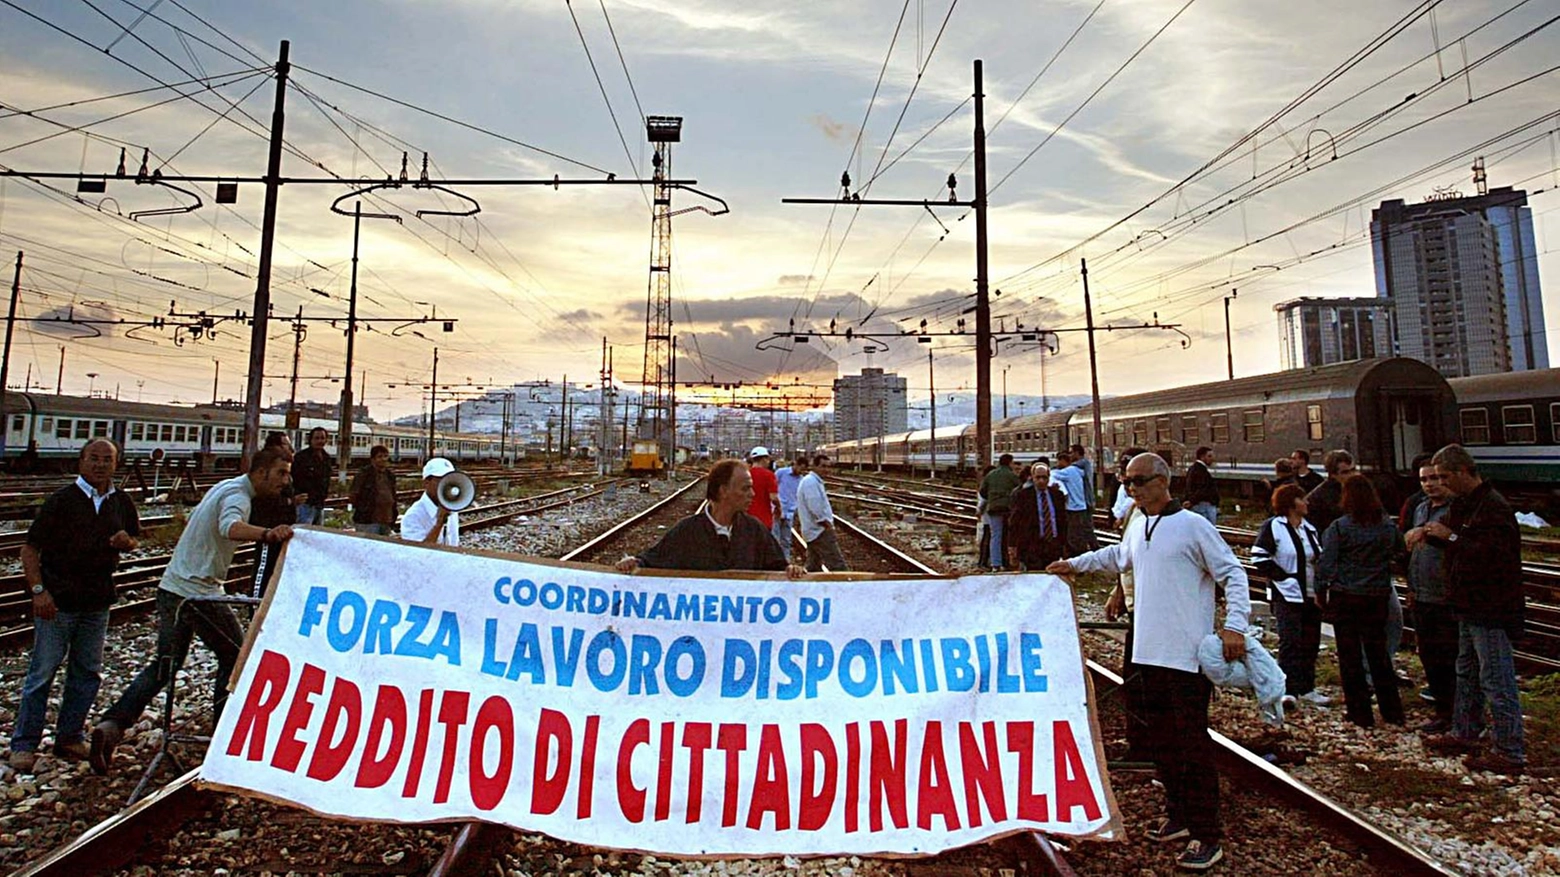 

Reddito di cittadinanza a Roma: "Addio sussidio, ma trovare lavoro è ancora un'impresa"